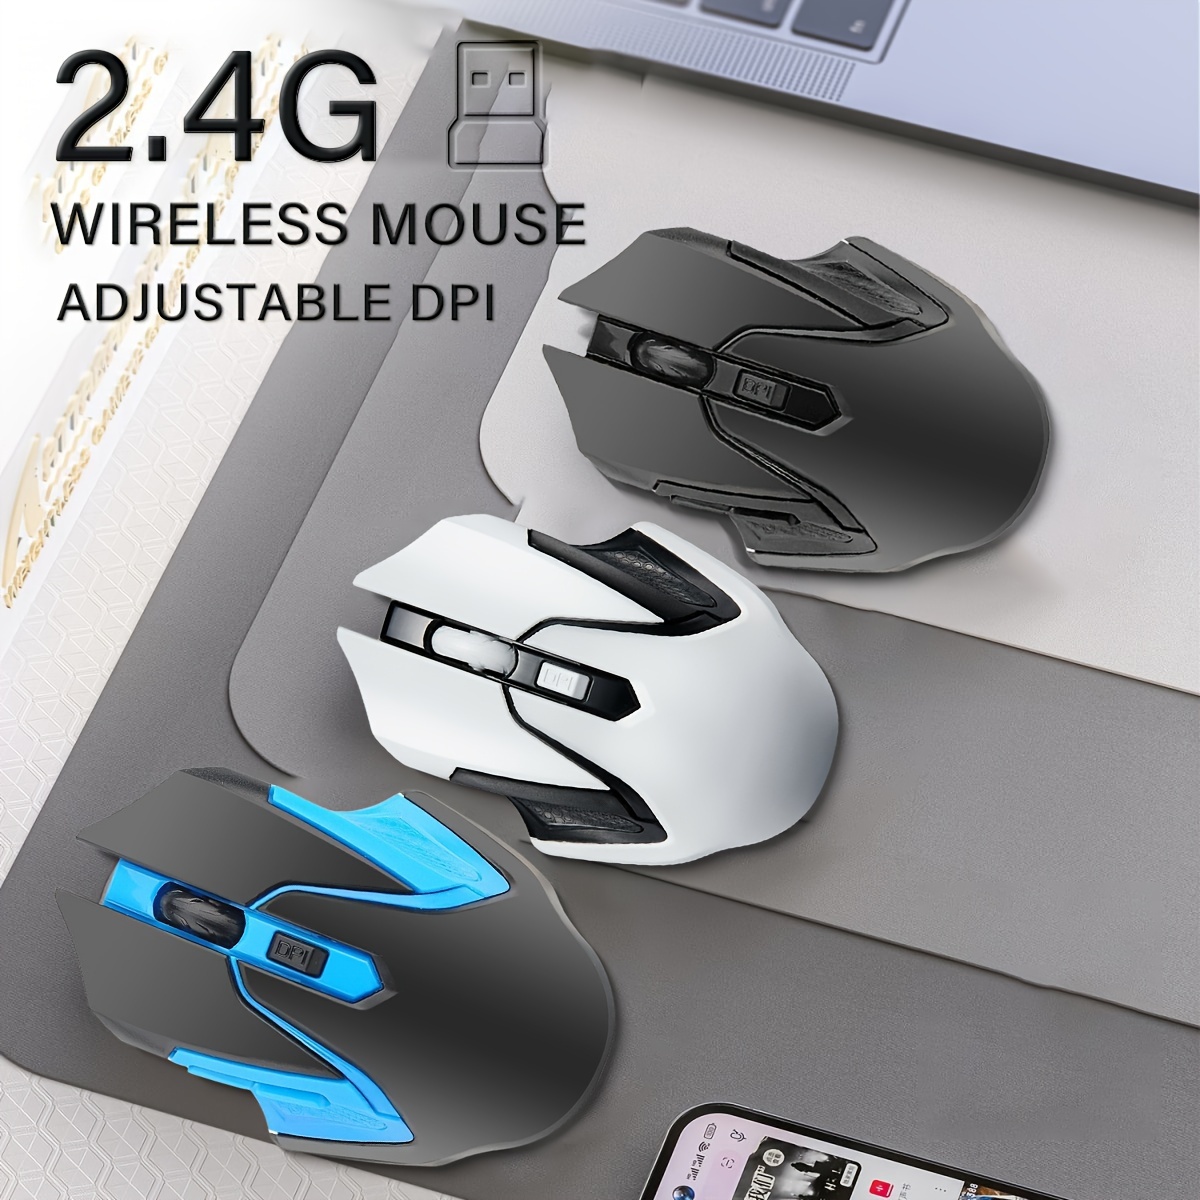 Ratón inalámbrico: Ratón Bluetooth para portátil BT 5.0/3.0 inalámbrico  2.4G Ratón óptico silencioso con receptor USB 3 DPI ajustable para MacBook